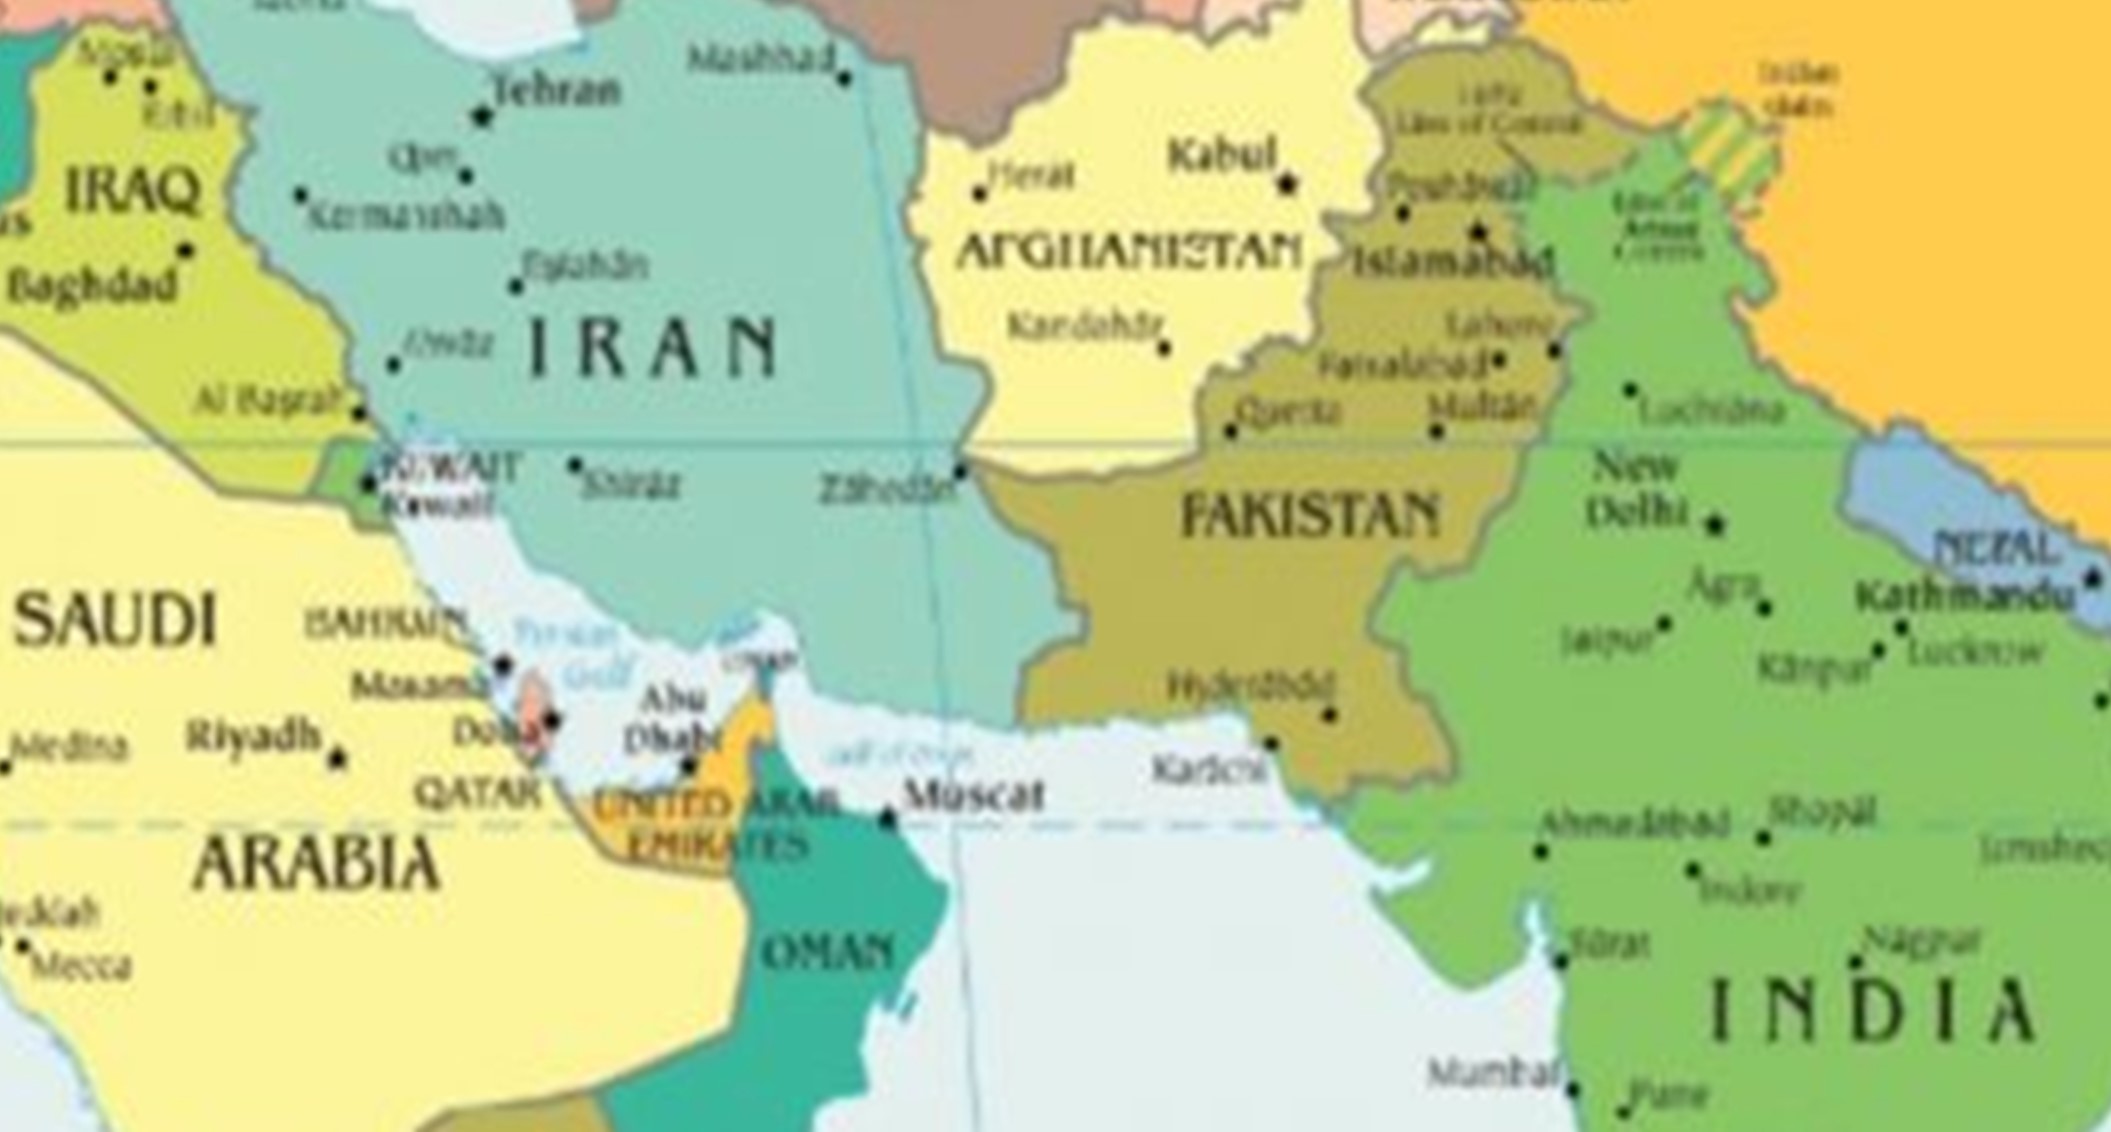 Us Pakistan To Hold Talks In Washington As Iran Crisis Raises